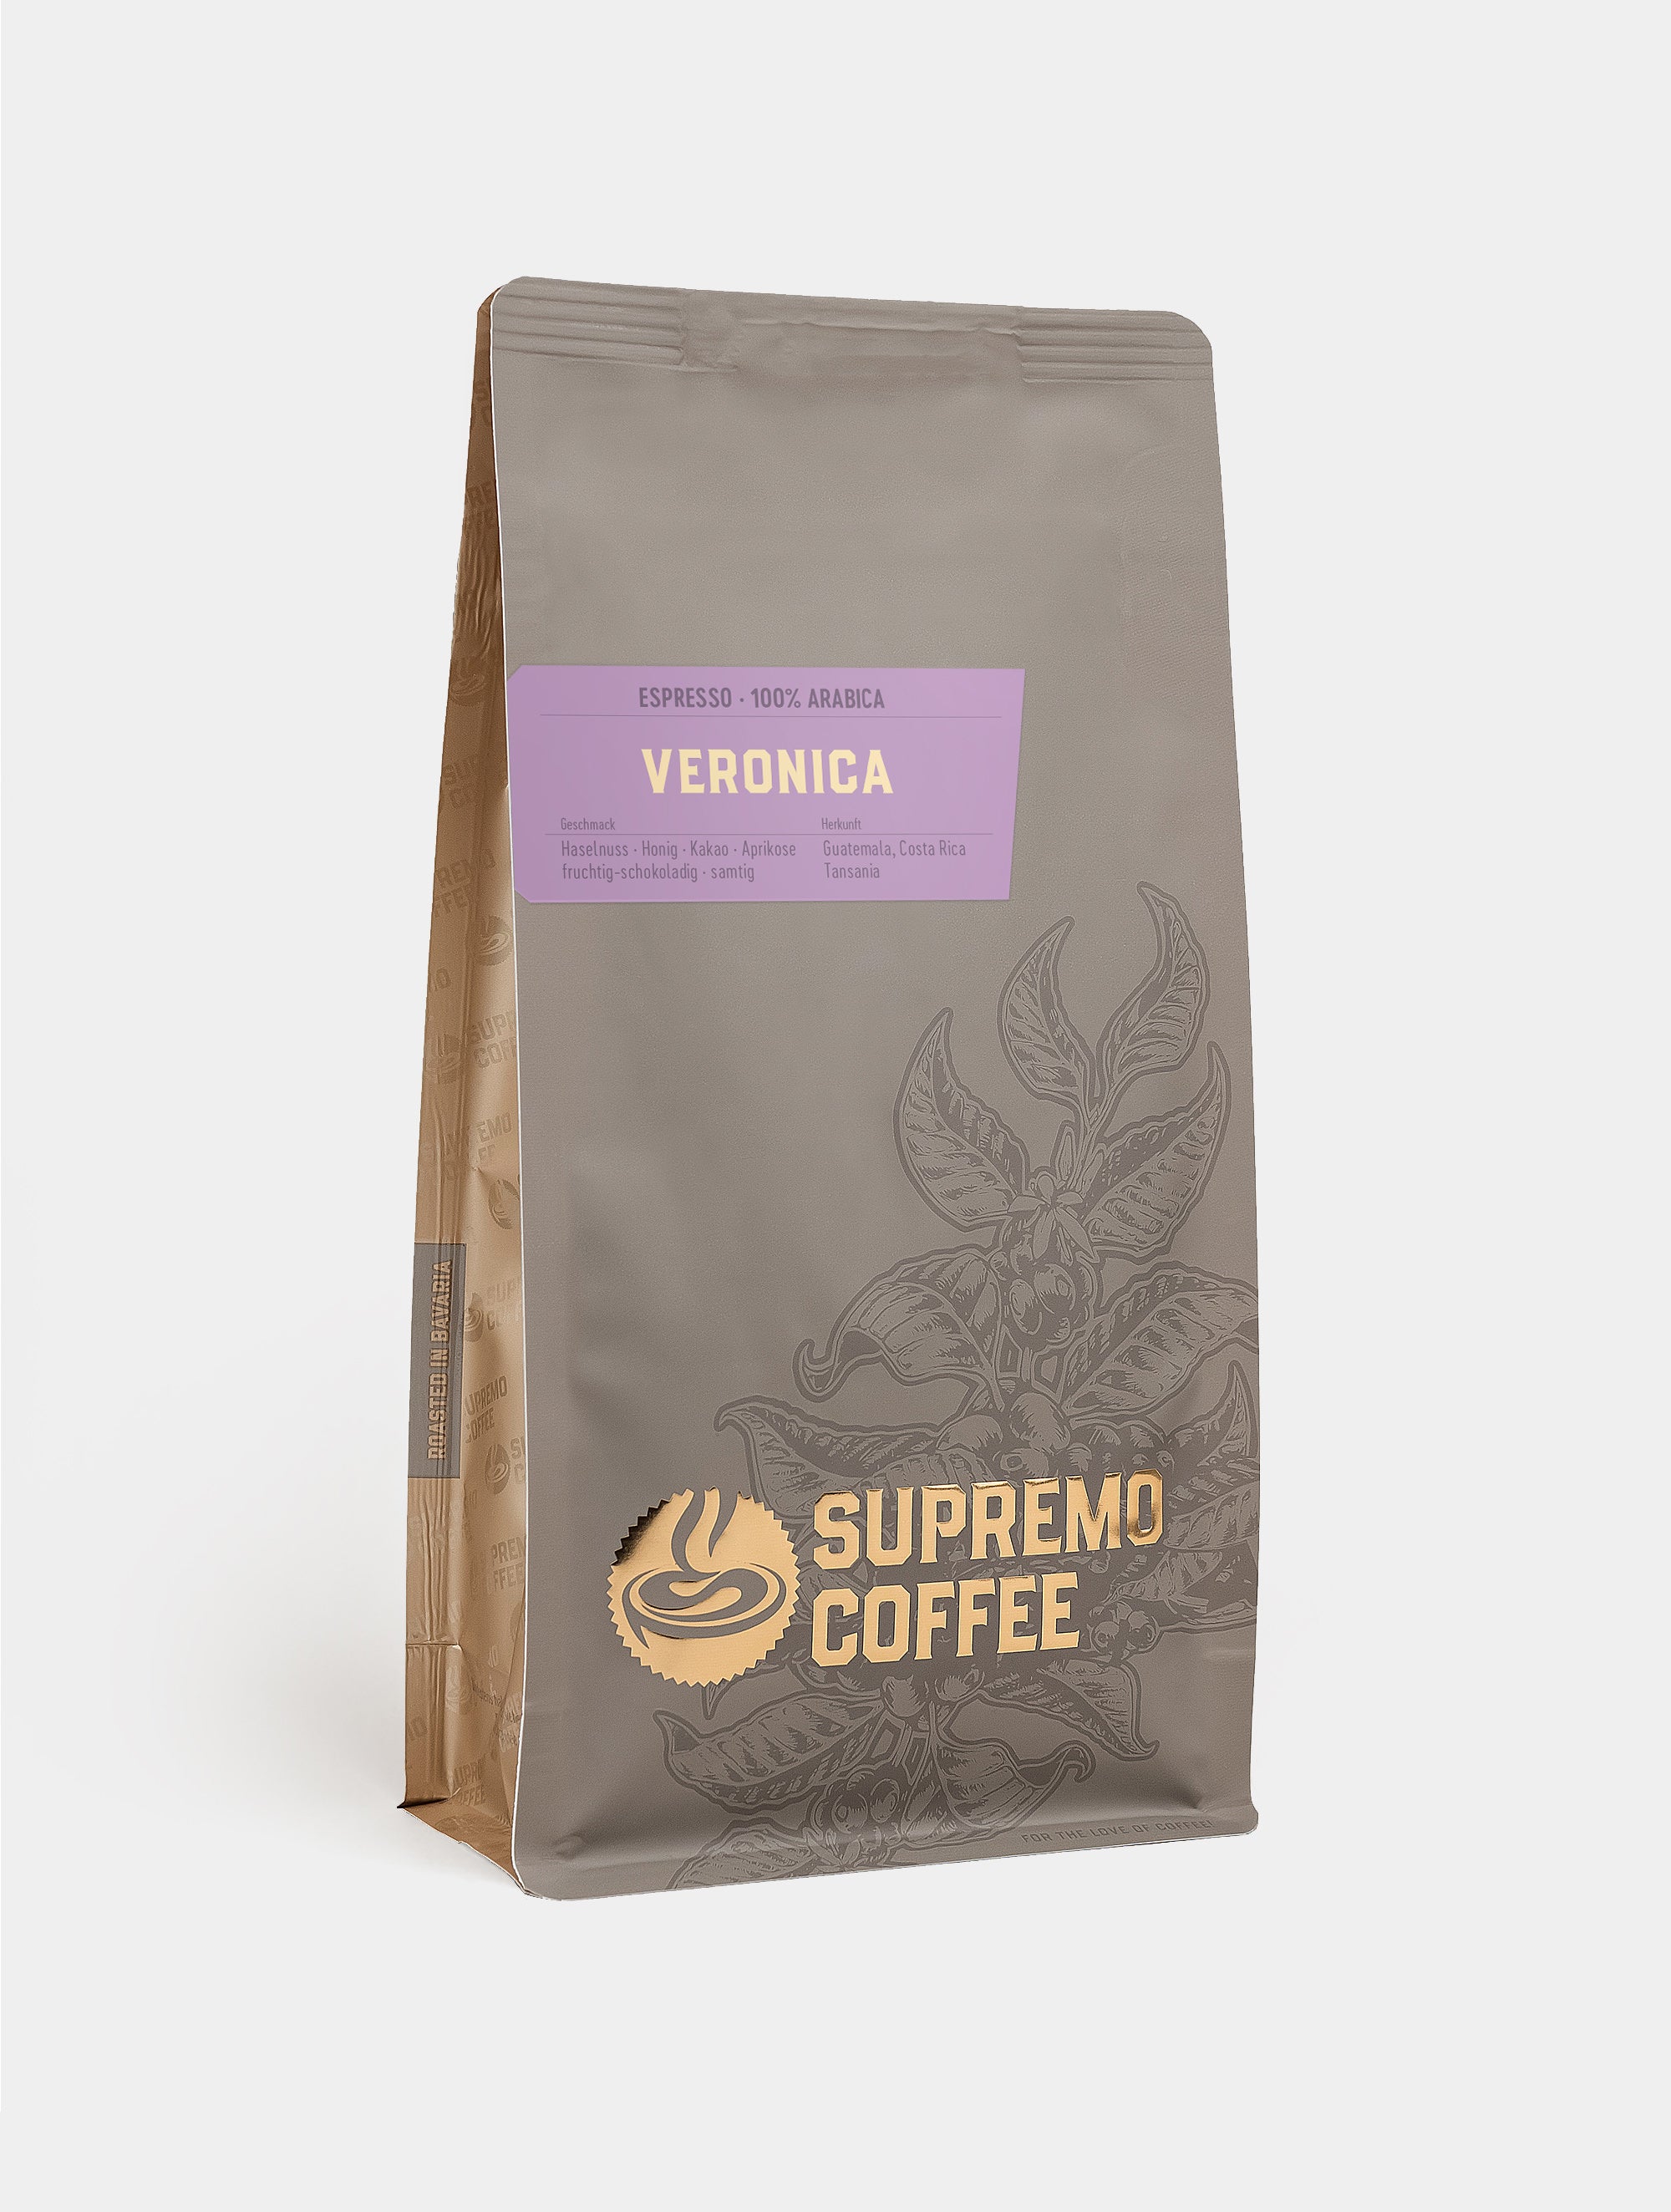 Veronica, Espresso 100% Arabica | SUPREMO Coffee